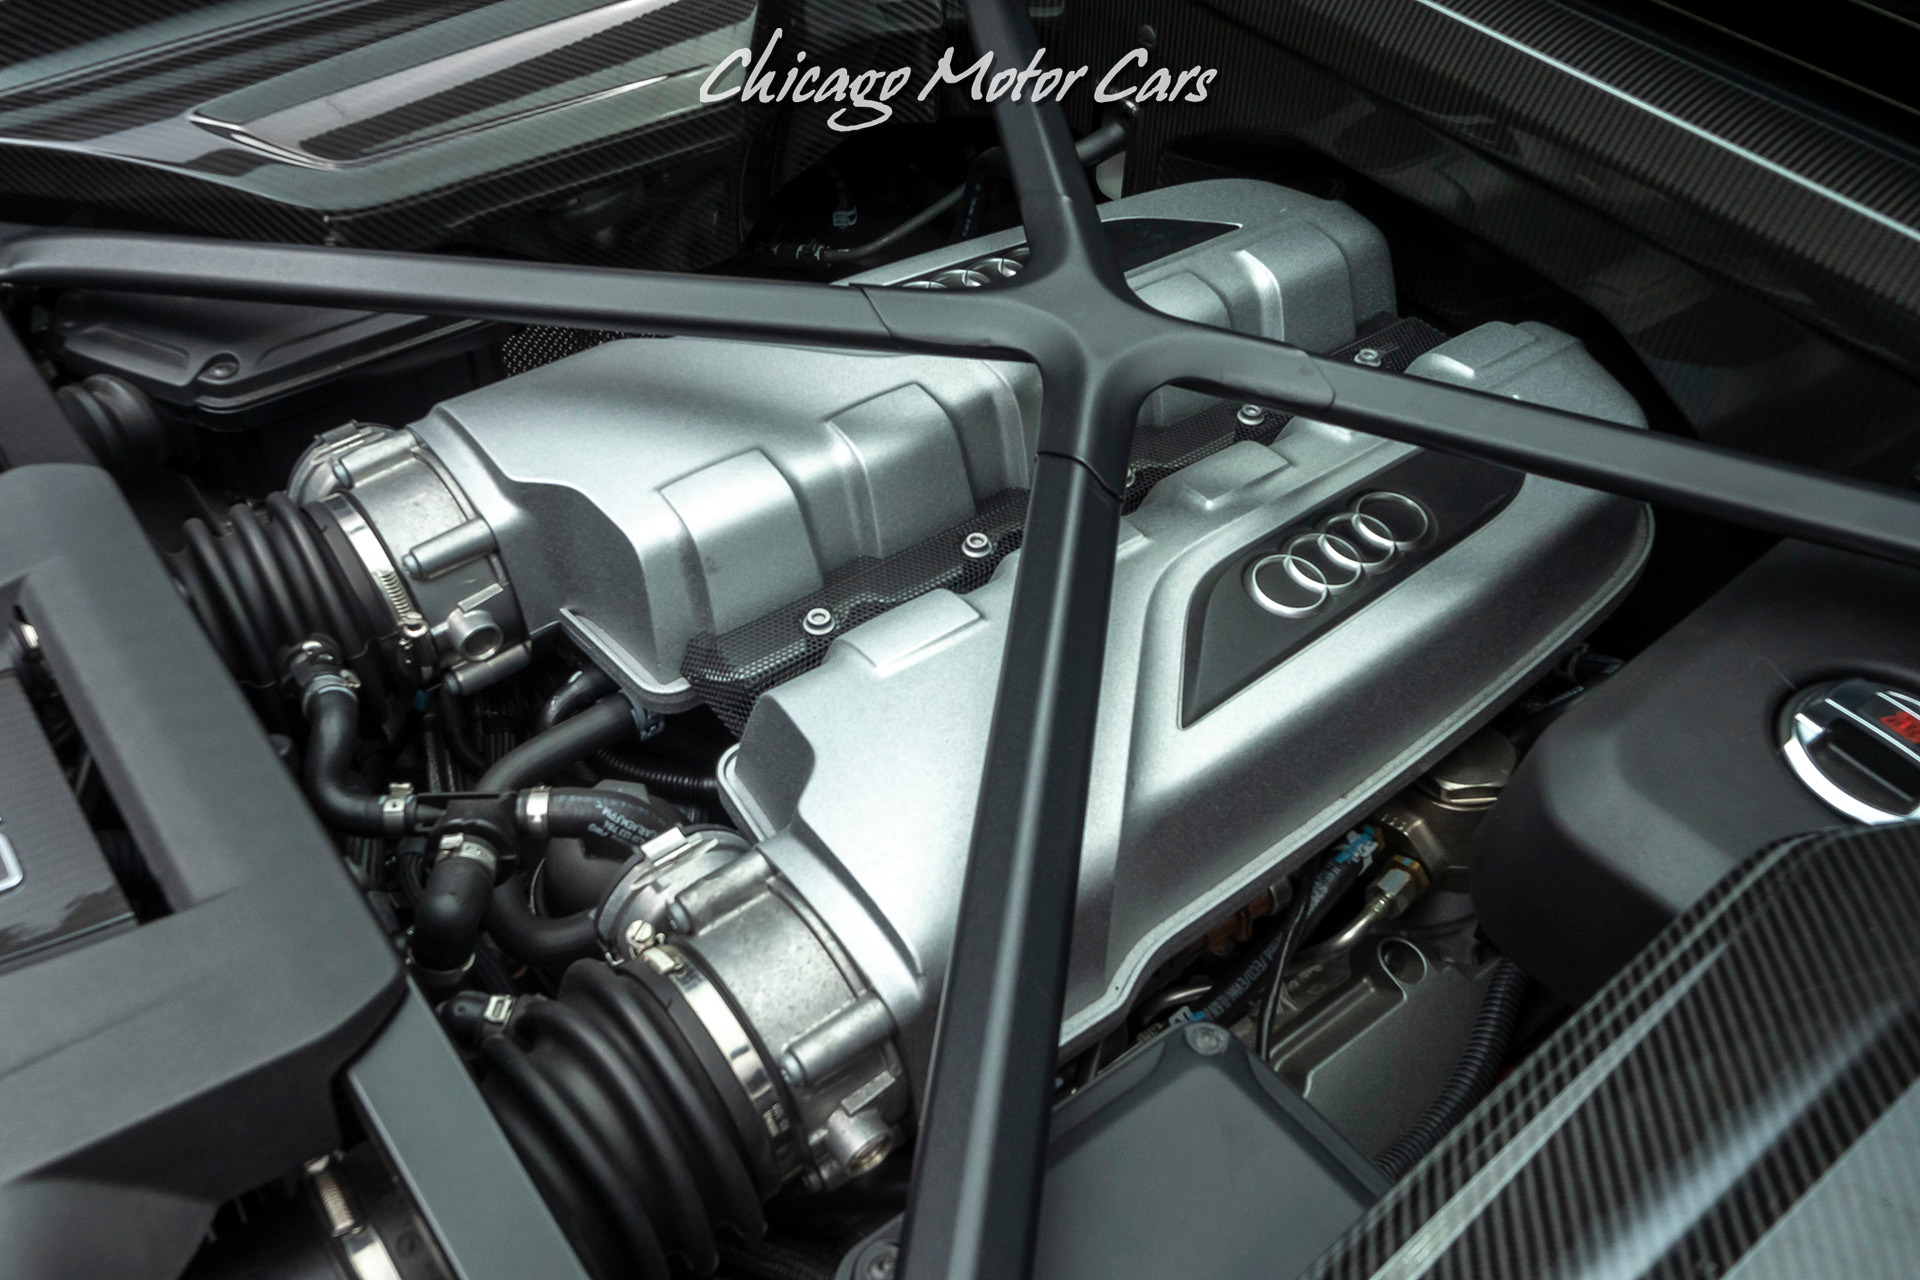 Used-2017-Audi-R8-52-quattro-V10-Plus---Original-MSRP-202k-PPF---CERAMIC-COATING